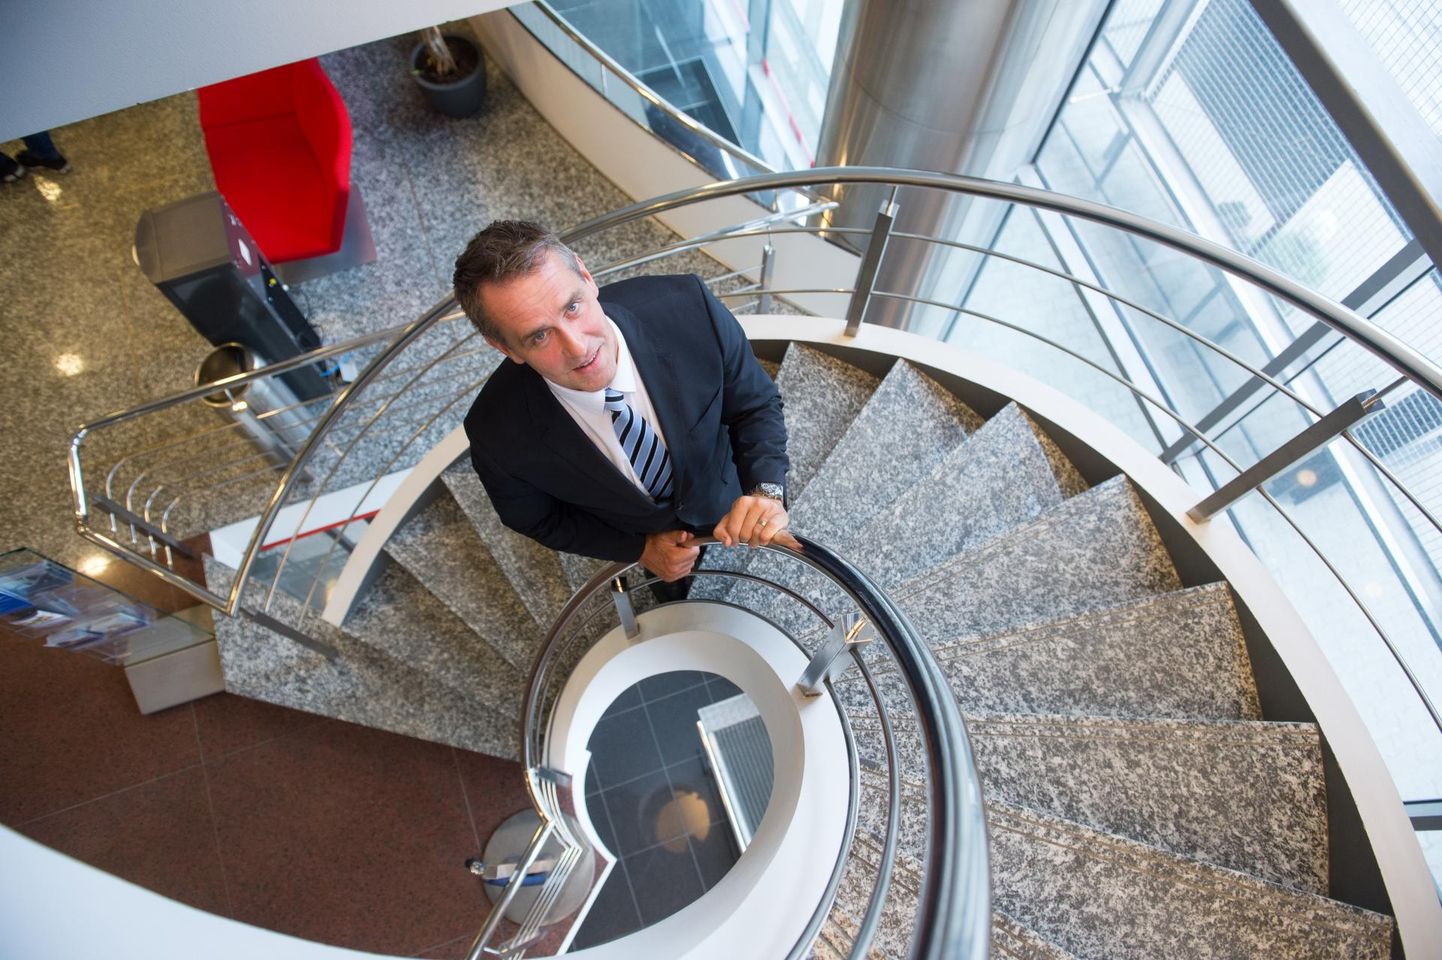 Danske Banki Eesti filiaali juht Aivar Rehe lahkus ametist 1. septembril 2015, pildil poseerib ta sama aasta kevadel. Tollal ta lahkumise põhjustest lähemalt rääkida ei tahtnud.